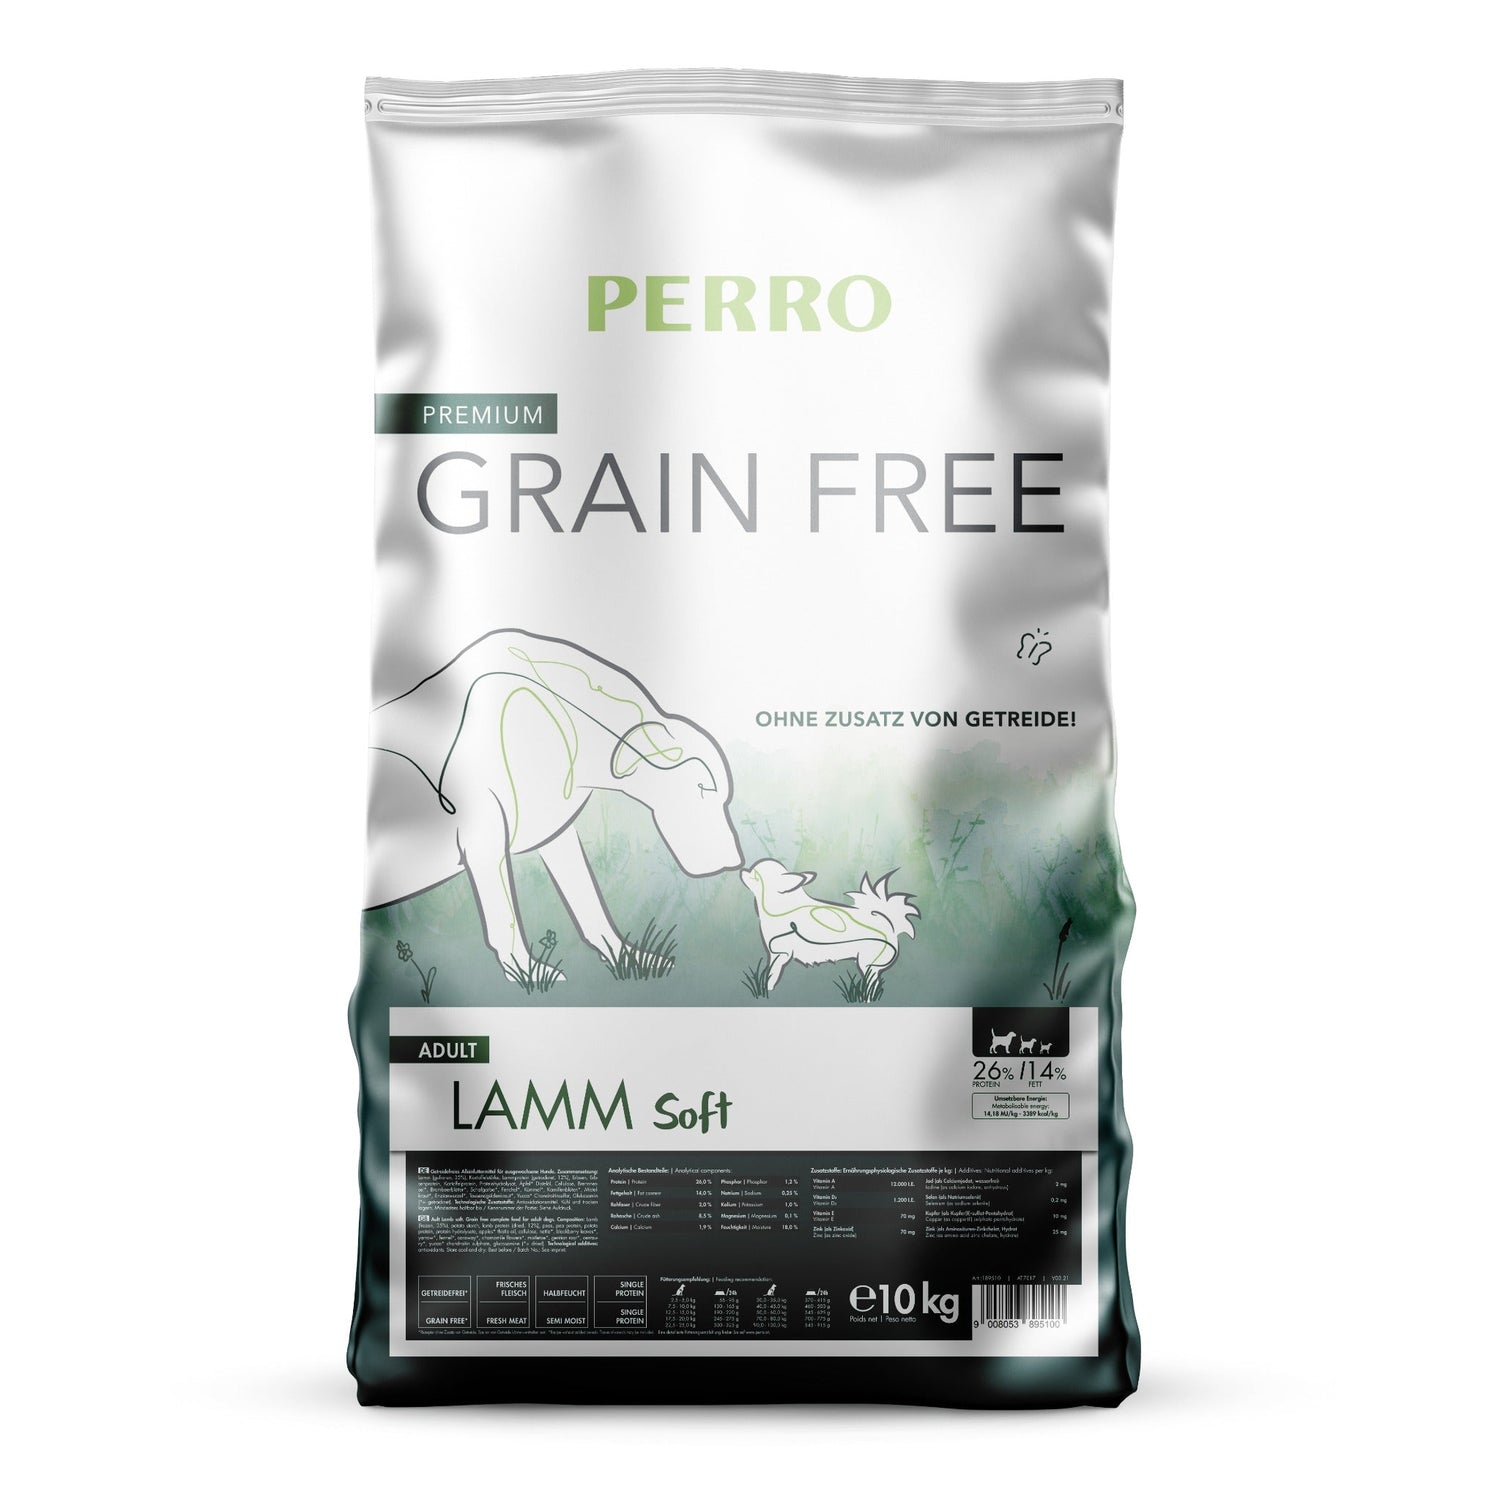 Perro Grain Free Adult Lamm Soft - Hunde Trockenfutter - Woofshack